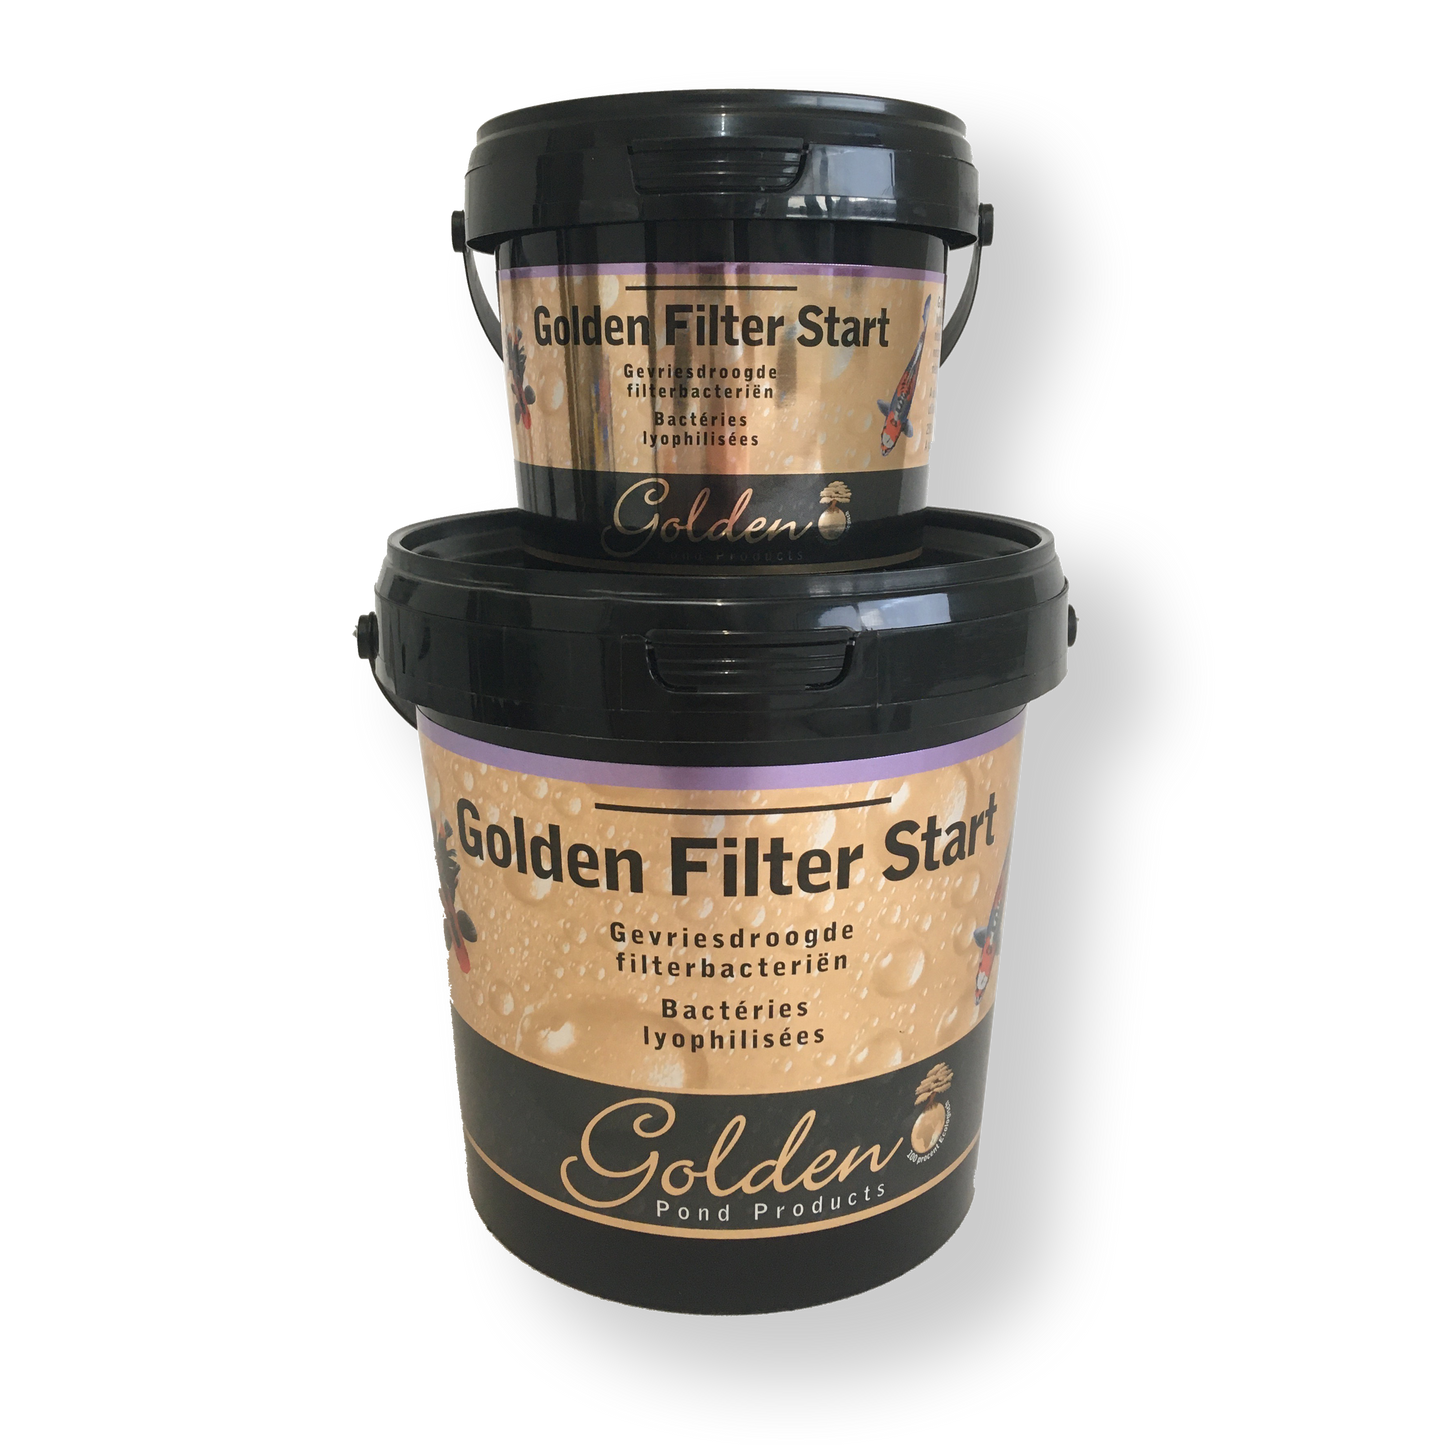 Golden Filter Start